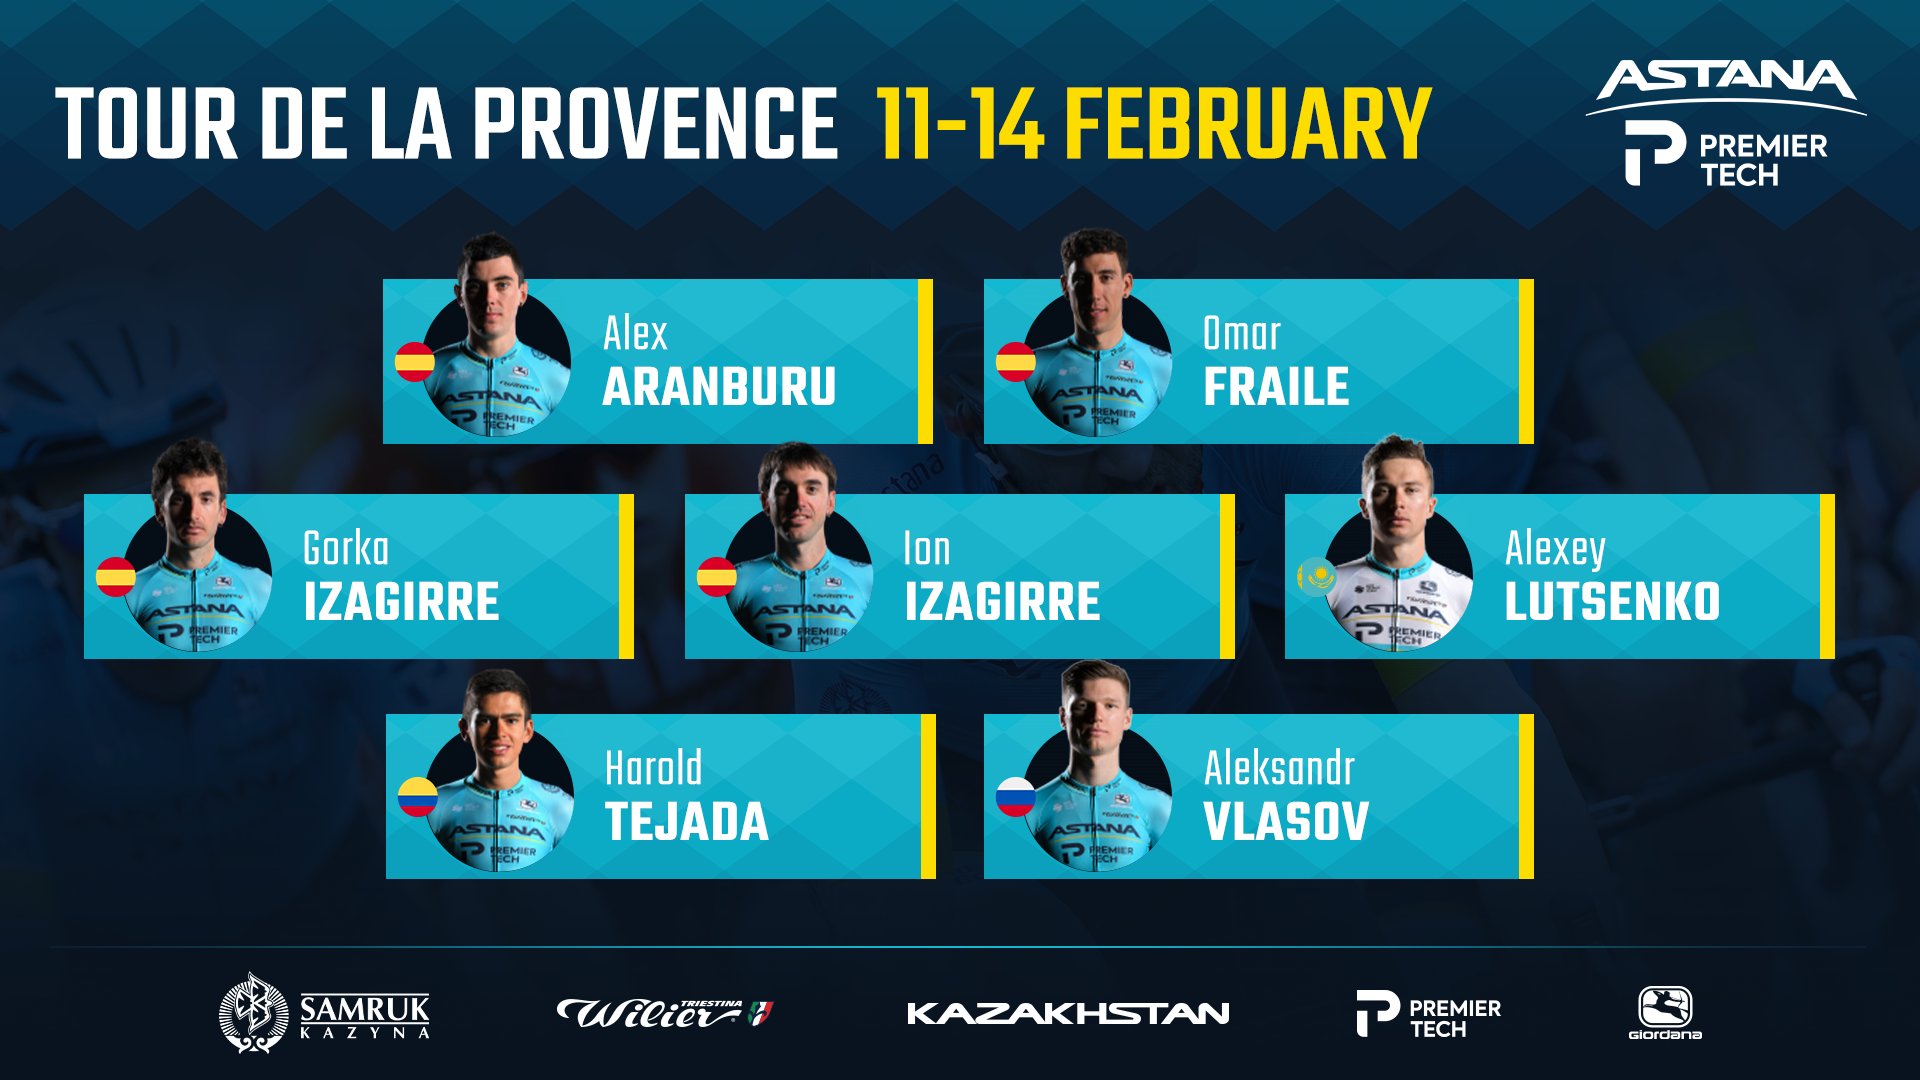 Nairo Quintana es el actual campeón de la carrera que se disputará desde este jueves 11 de febrero hasta el próximo domingo 14. Vía: Astana Premier Tech